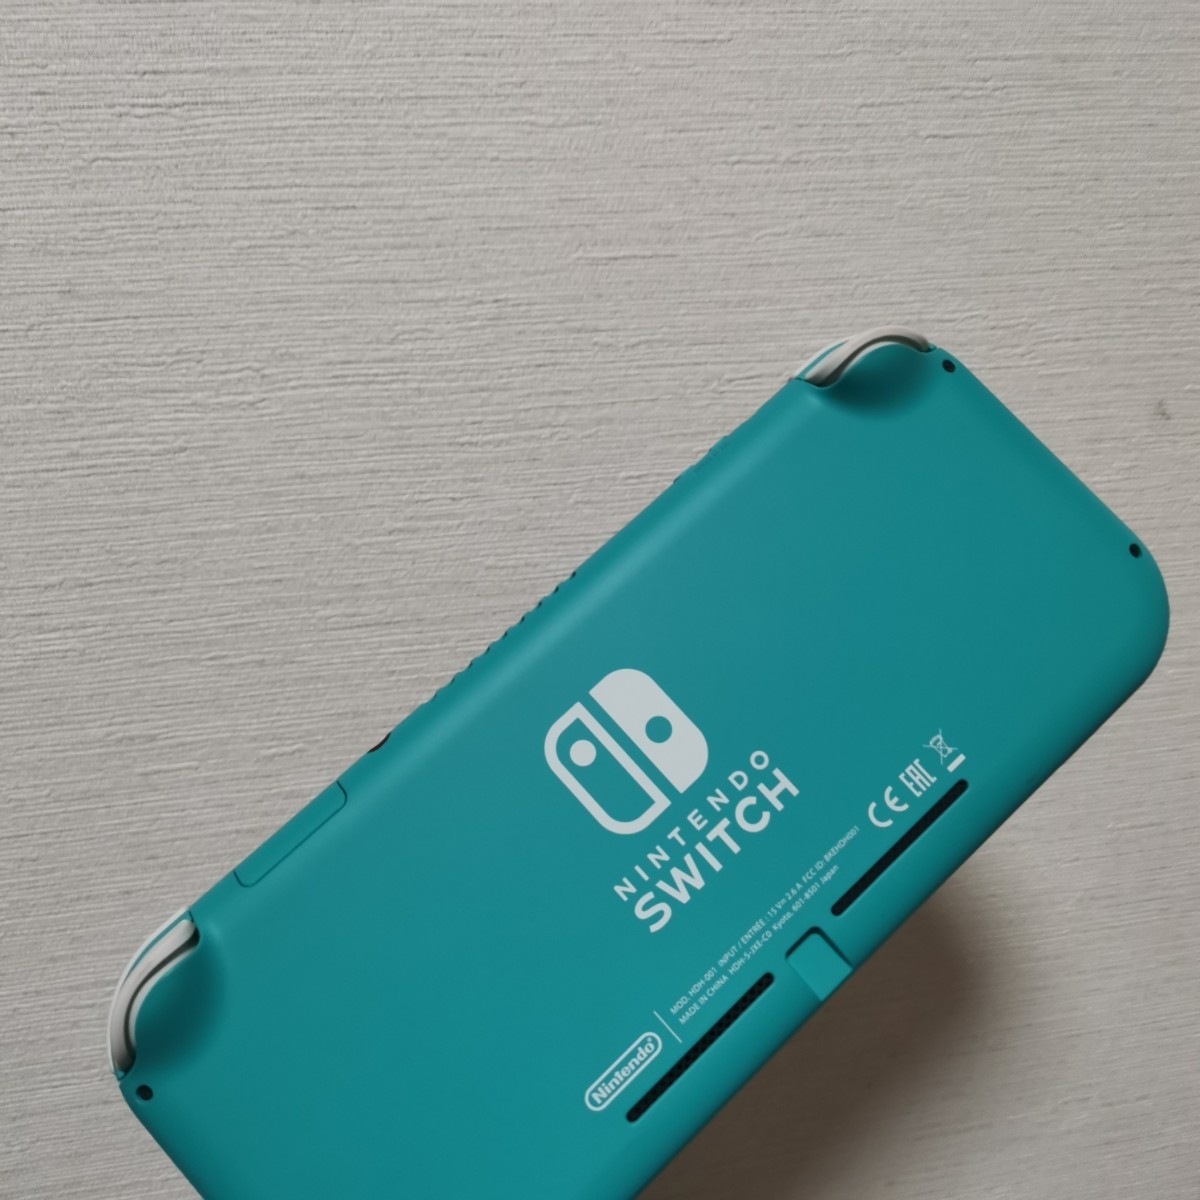 ニンテンドースイッチライト Nintendo Switch Light ターコイズブルー あつもりケース付き 付属品完品